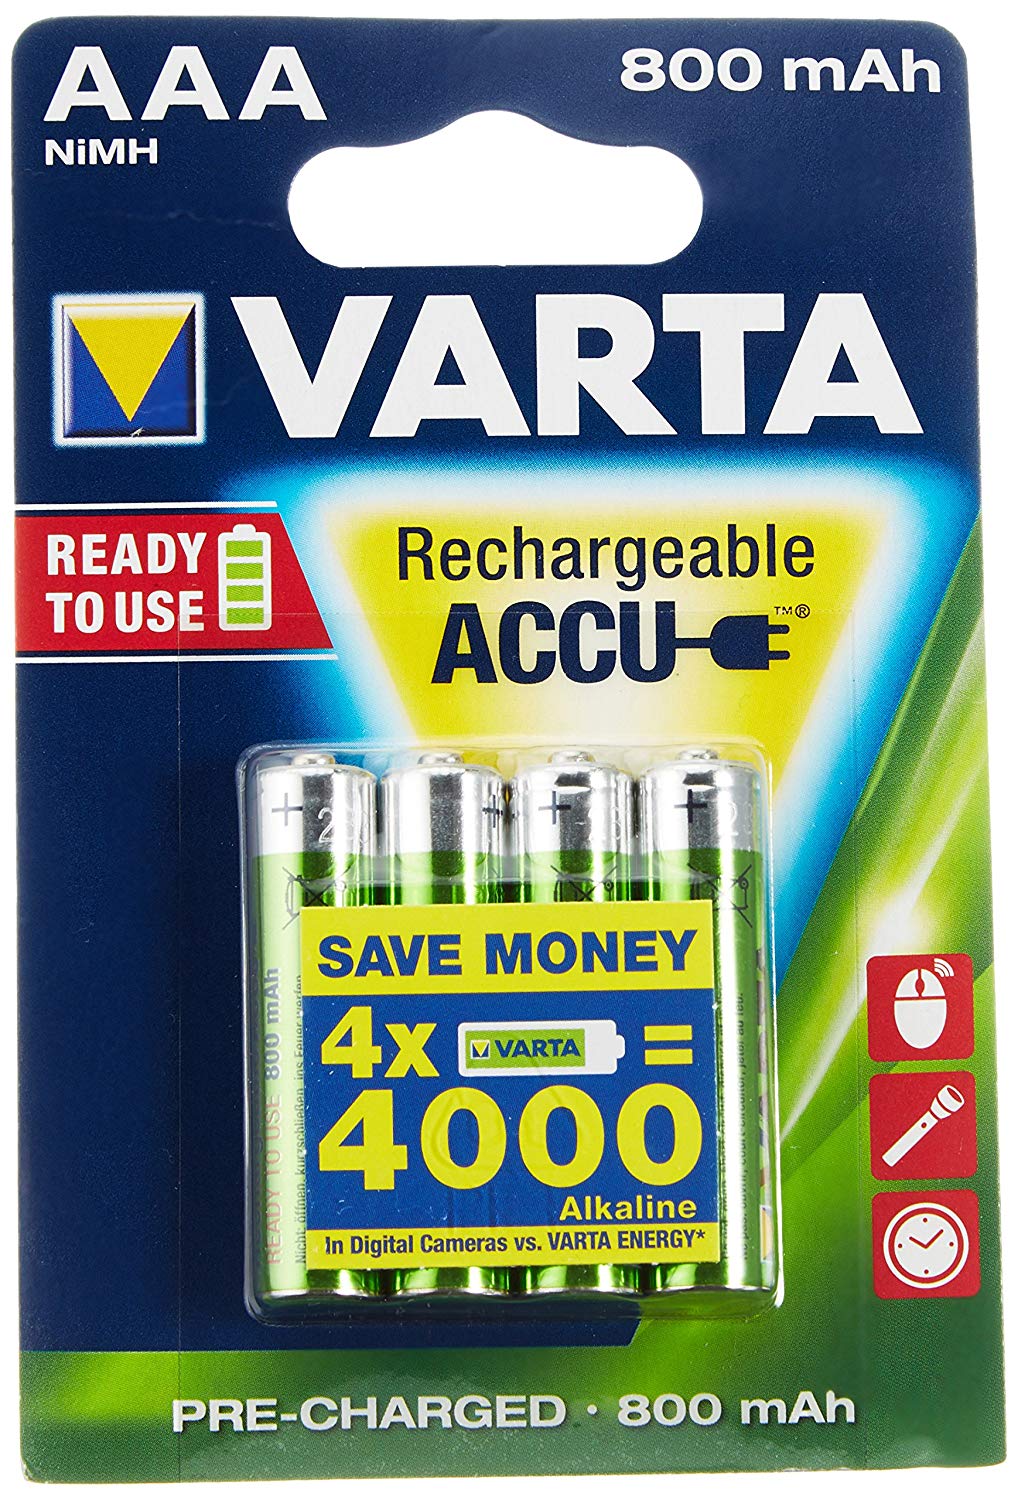 Paquete de 4 pilas recargables AAA de Varta solo 1,77€